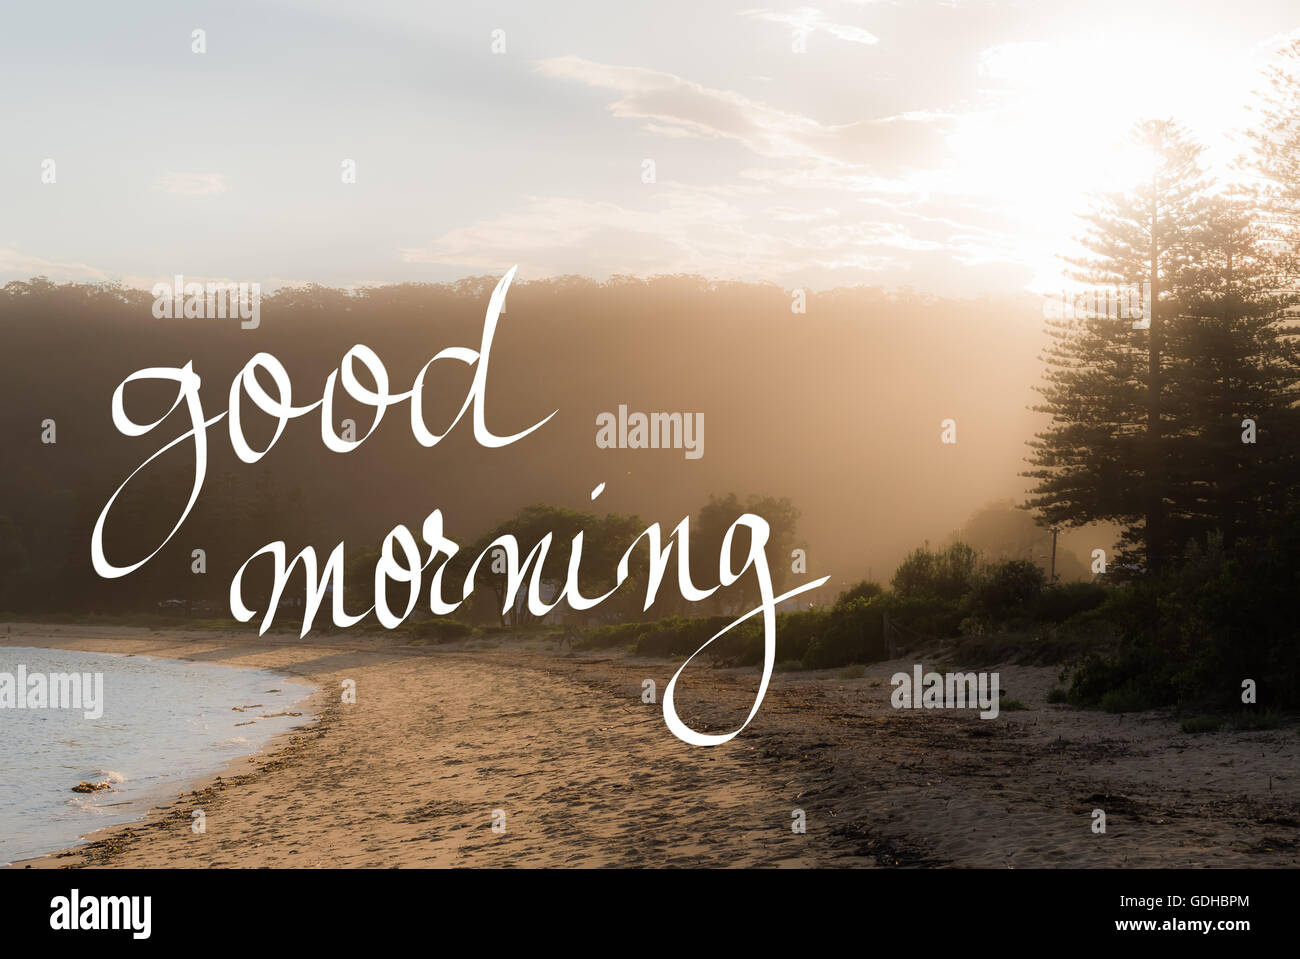 Buona mattina saluto. Manoscritta testo motivazionale su sunset calma spiaggia soleggiata con sfondo vintage filtro applicato Foto Stock